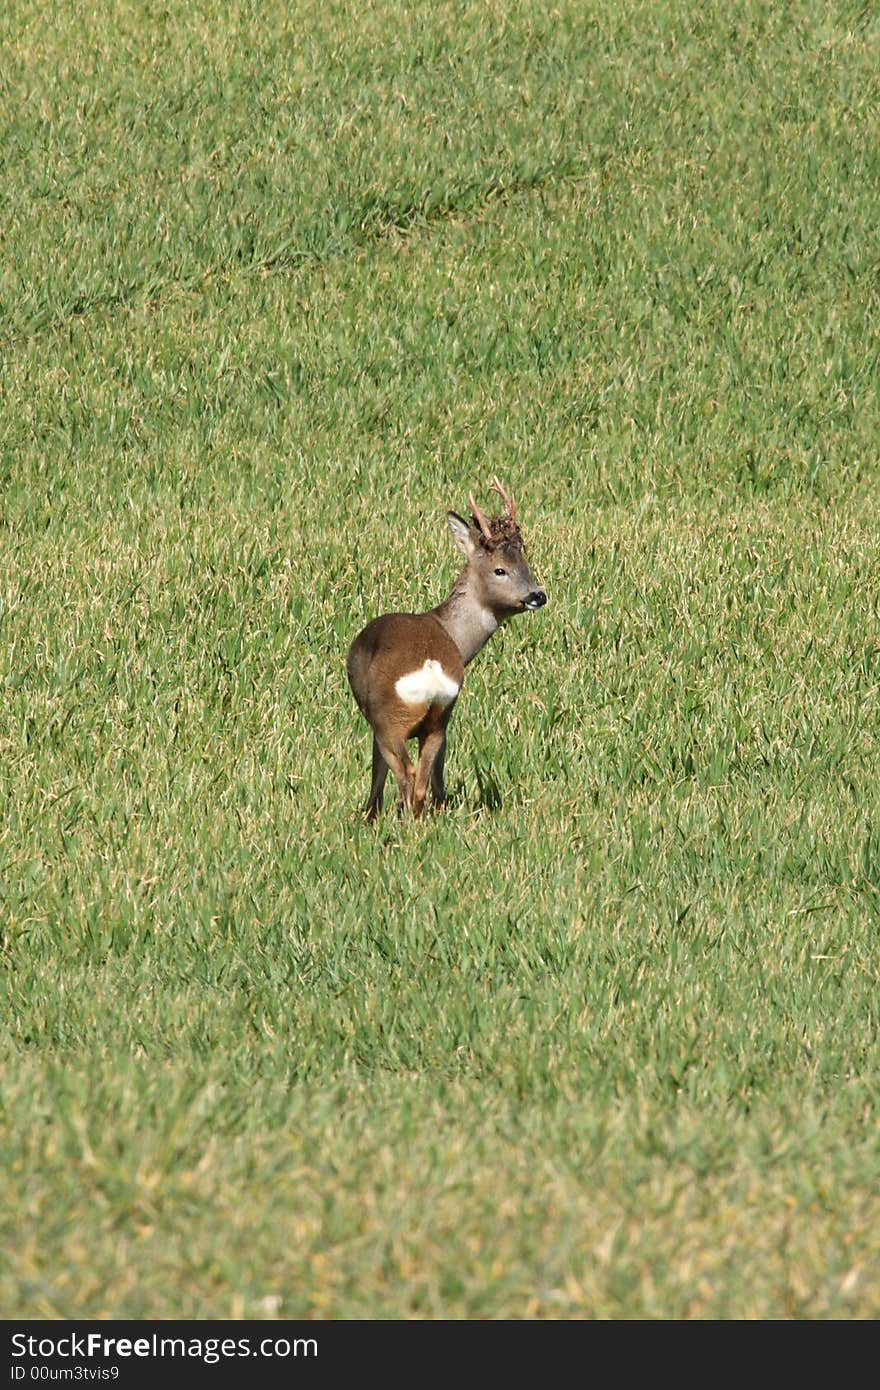 Red deer in a field near Peterhead, Scotland